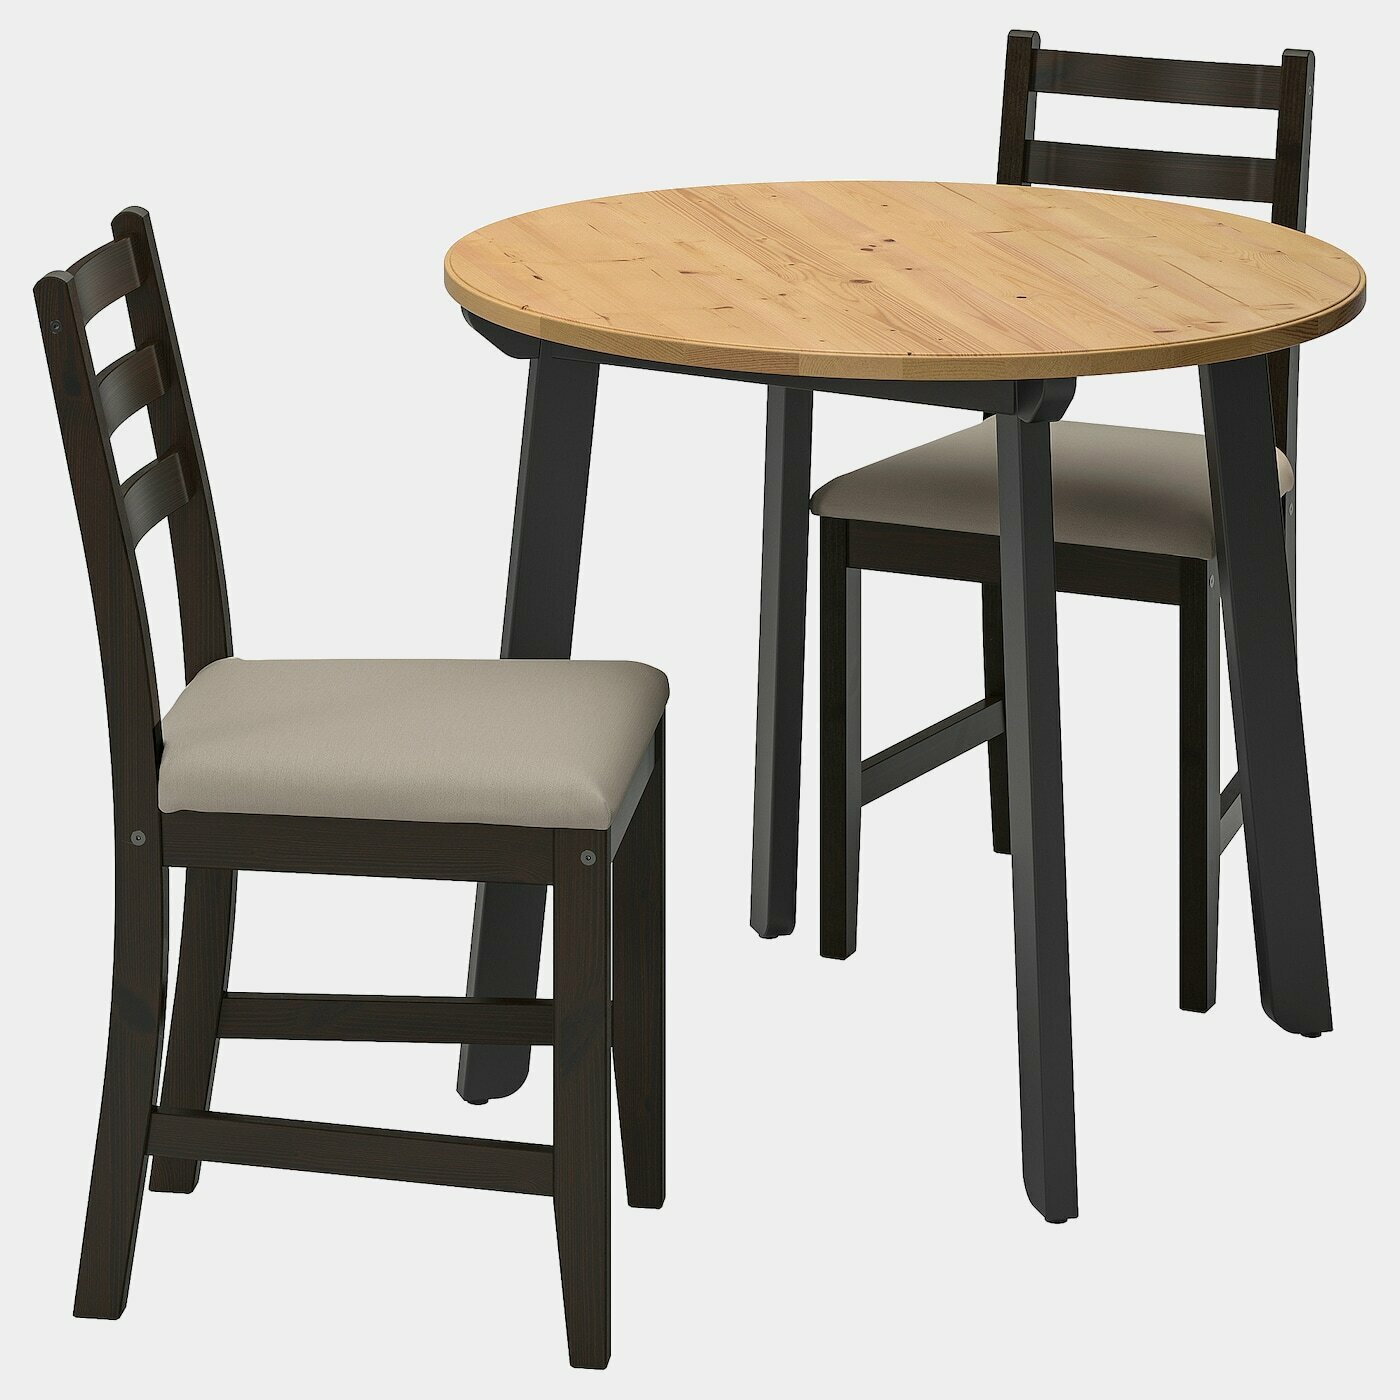 GAMLARED / LERHAMN Tisch und 2 Stühle  - Essplatzgruppe - Möbel Ideen für dein Zuhause von Home Trends. Möbel Trends von Social Media Influencer für dein Skandi Zuhause.